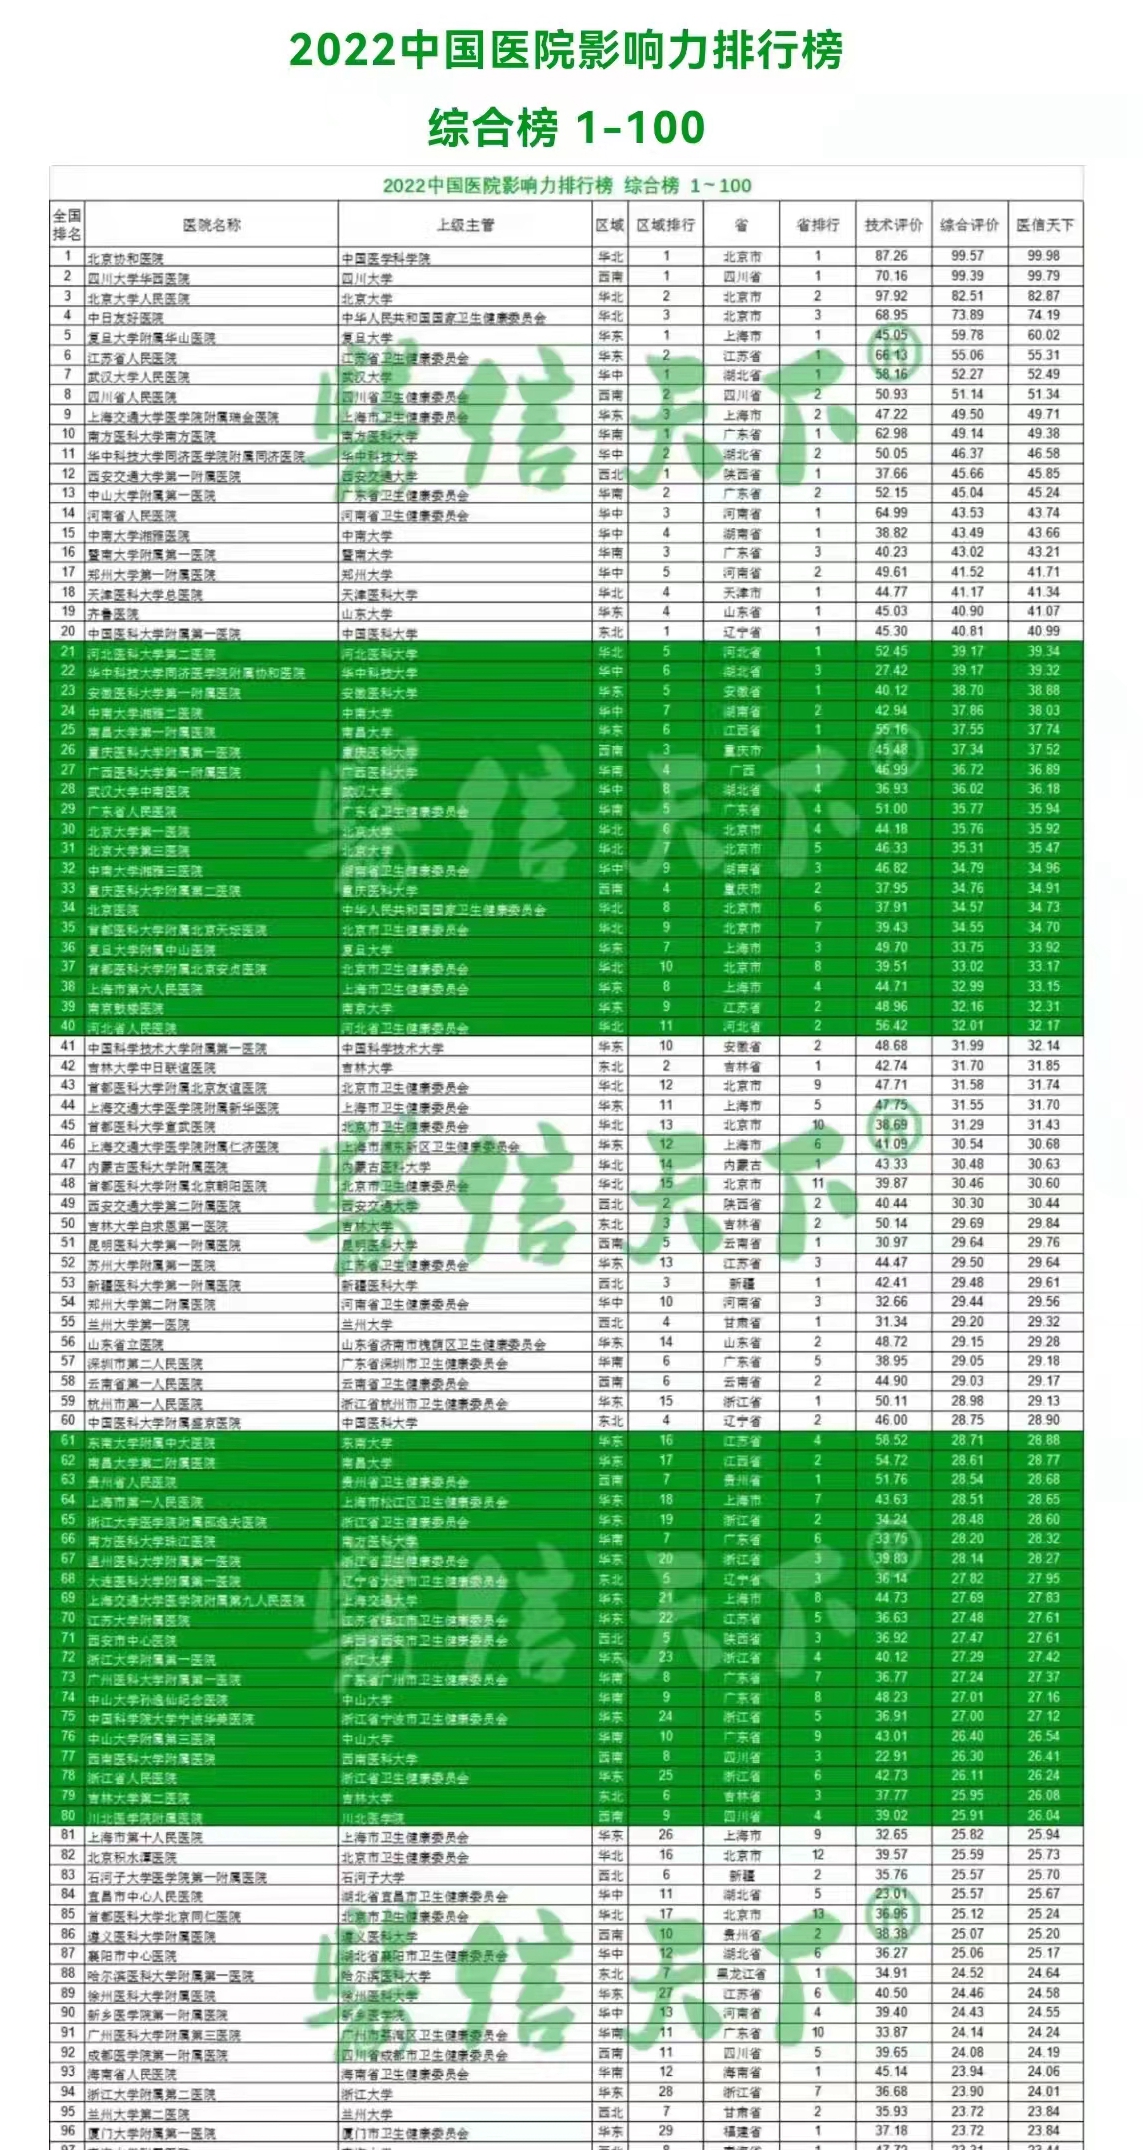 太阳app官方下载|主頁|欢迎您!第一医院排名“医信天下——2022中国医院影响力榜”第55名、甘肃省第1名